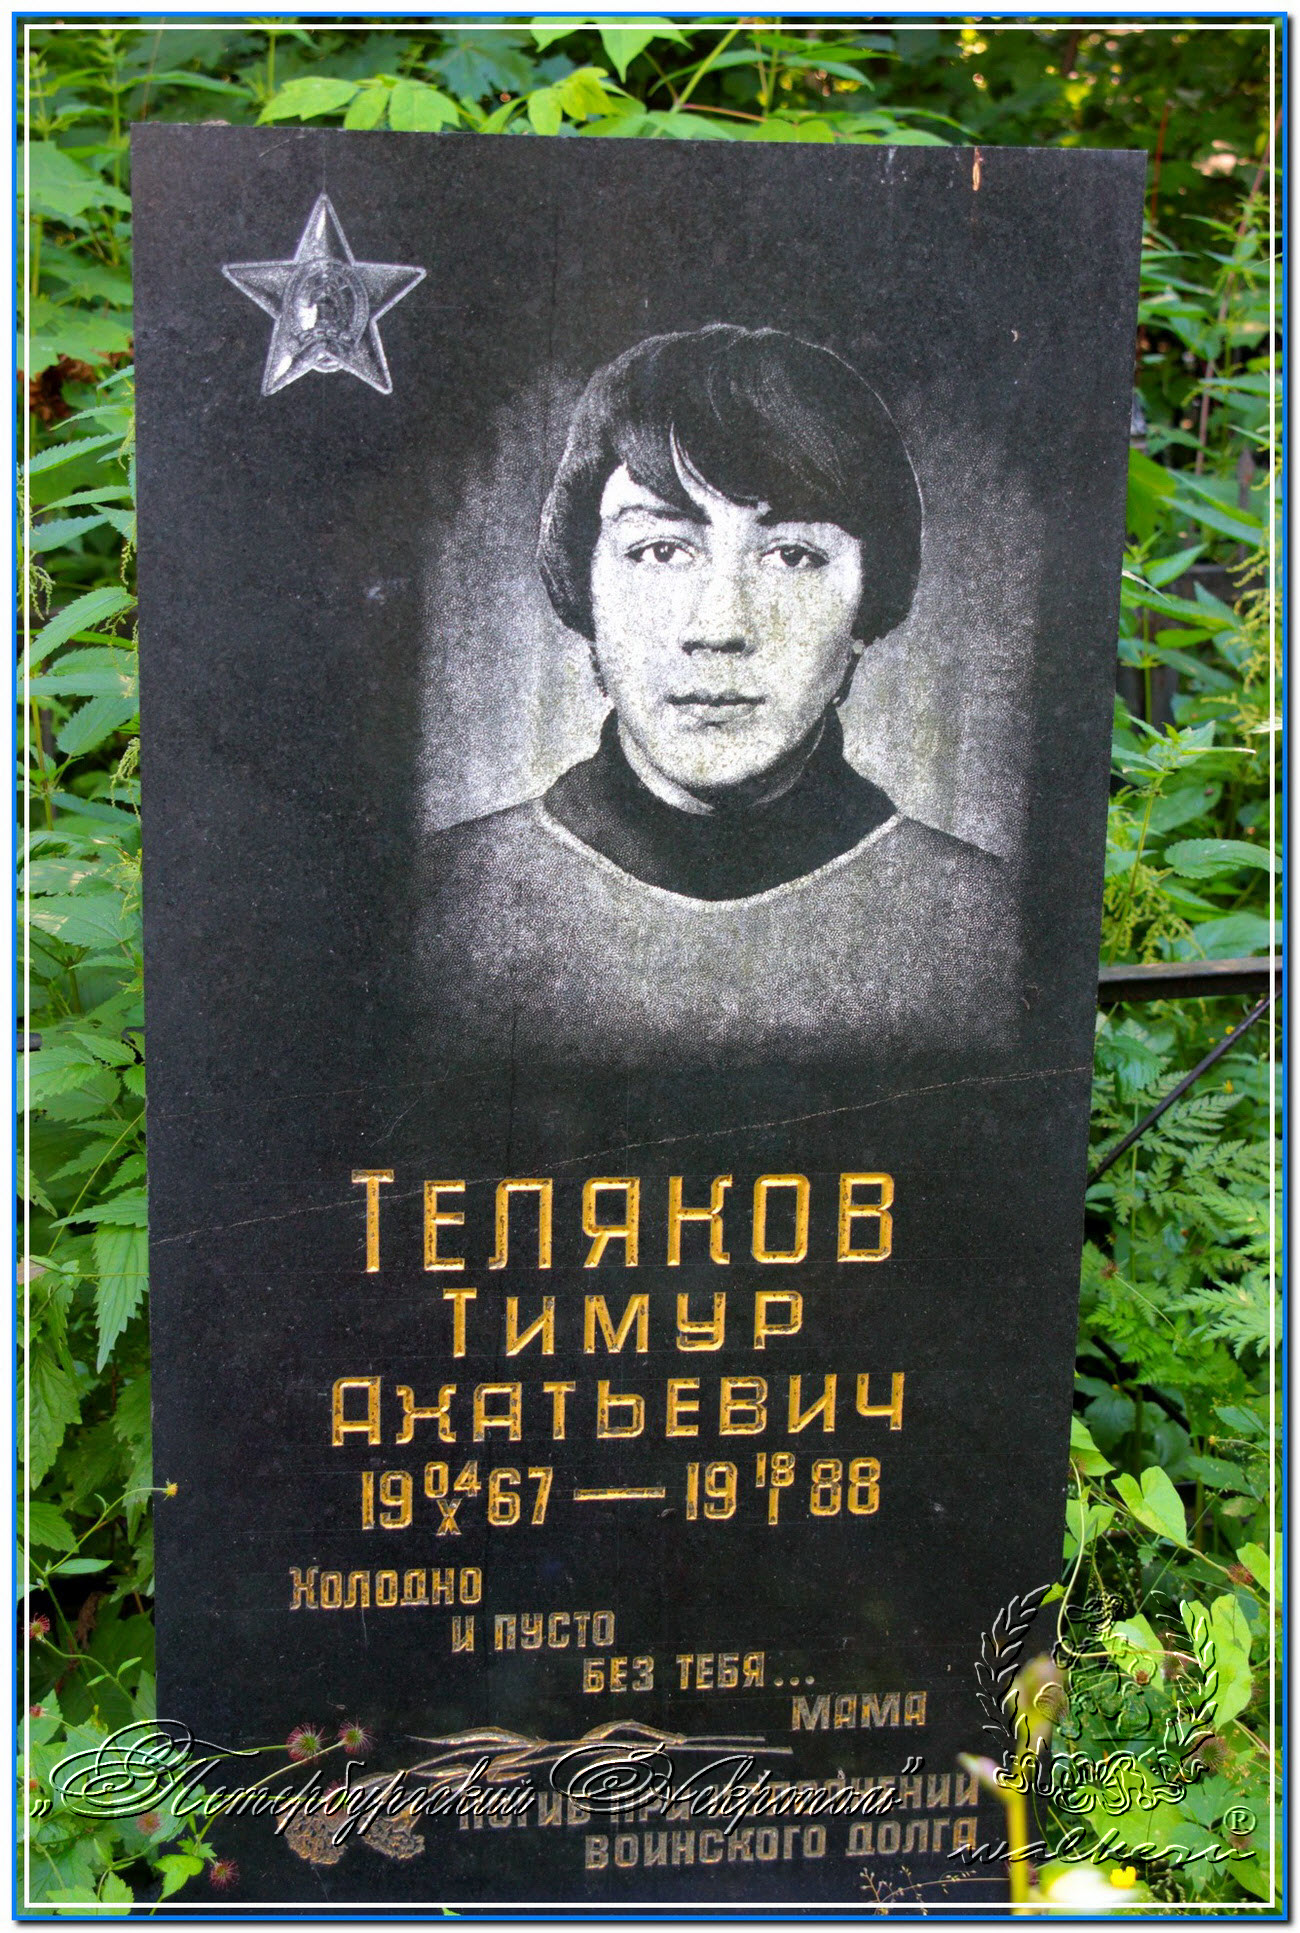 Теляков Тимур Ахатьевич